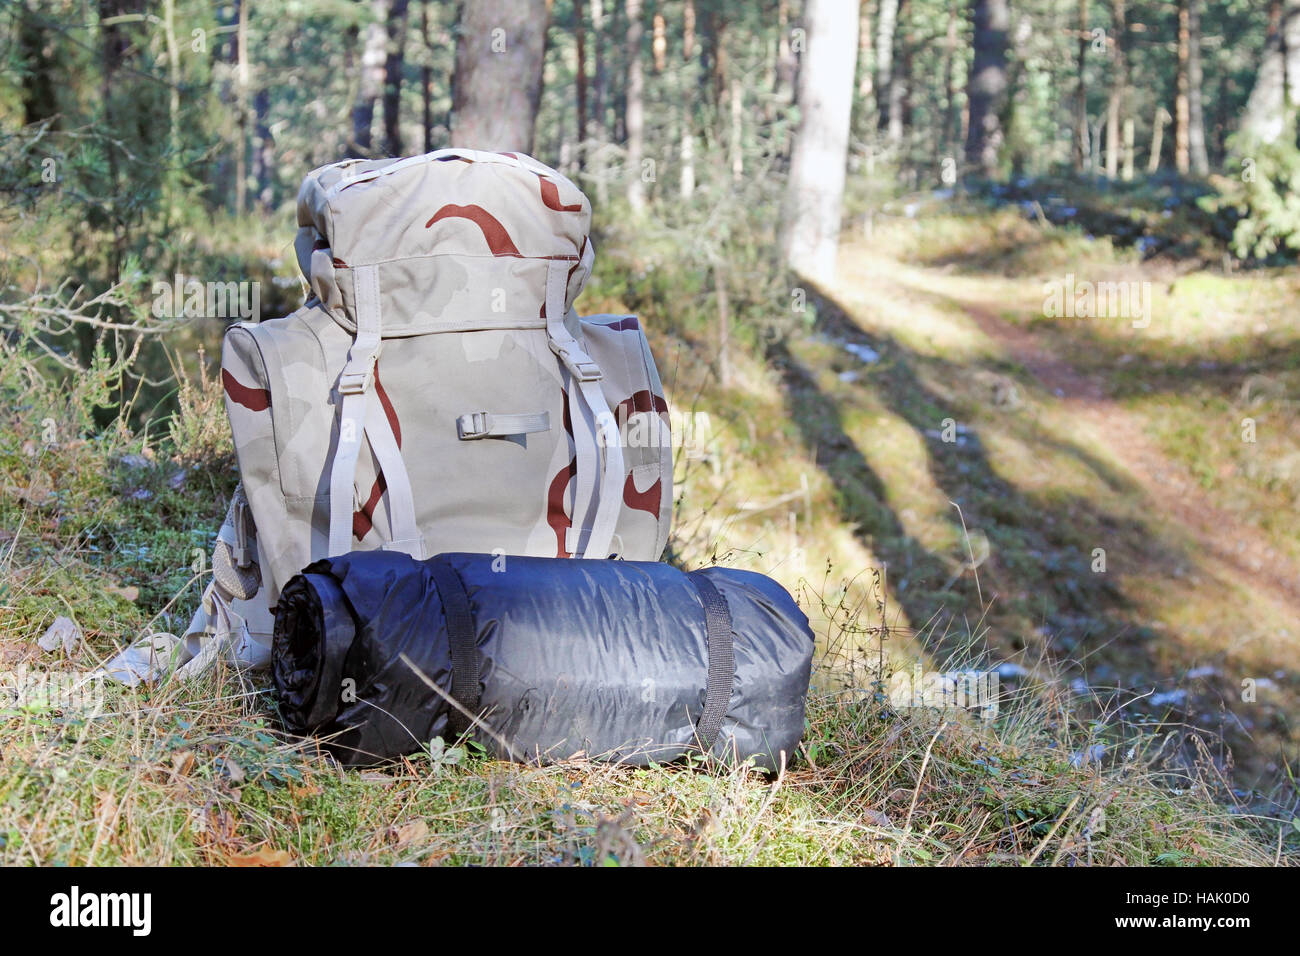 Randonnée - sac à dos avec l'équipement de camping dans les bois Banque D'Images